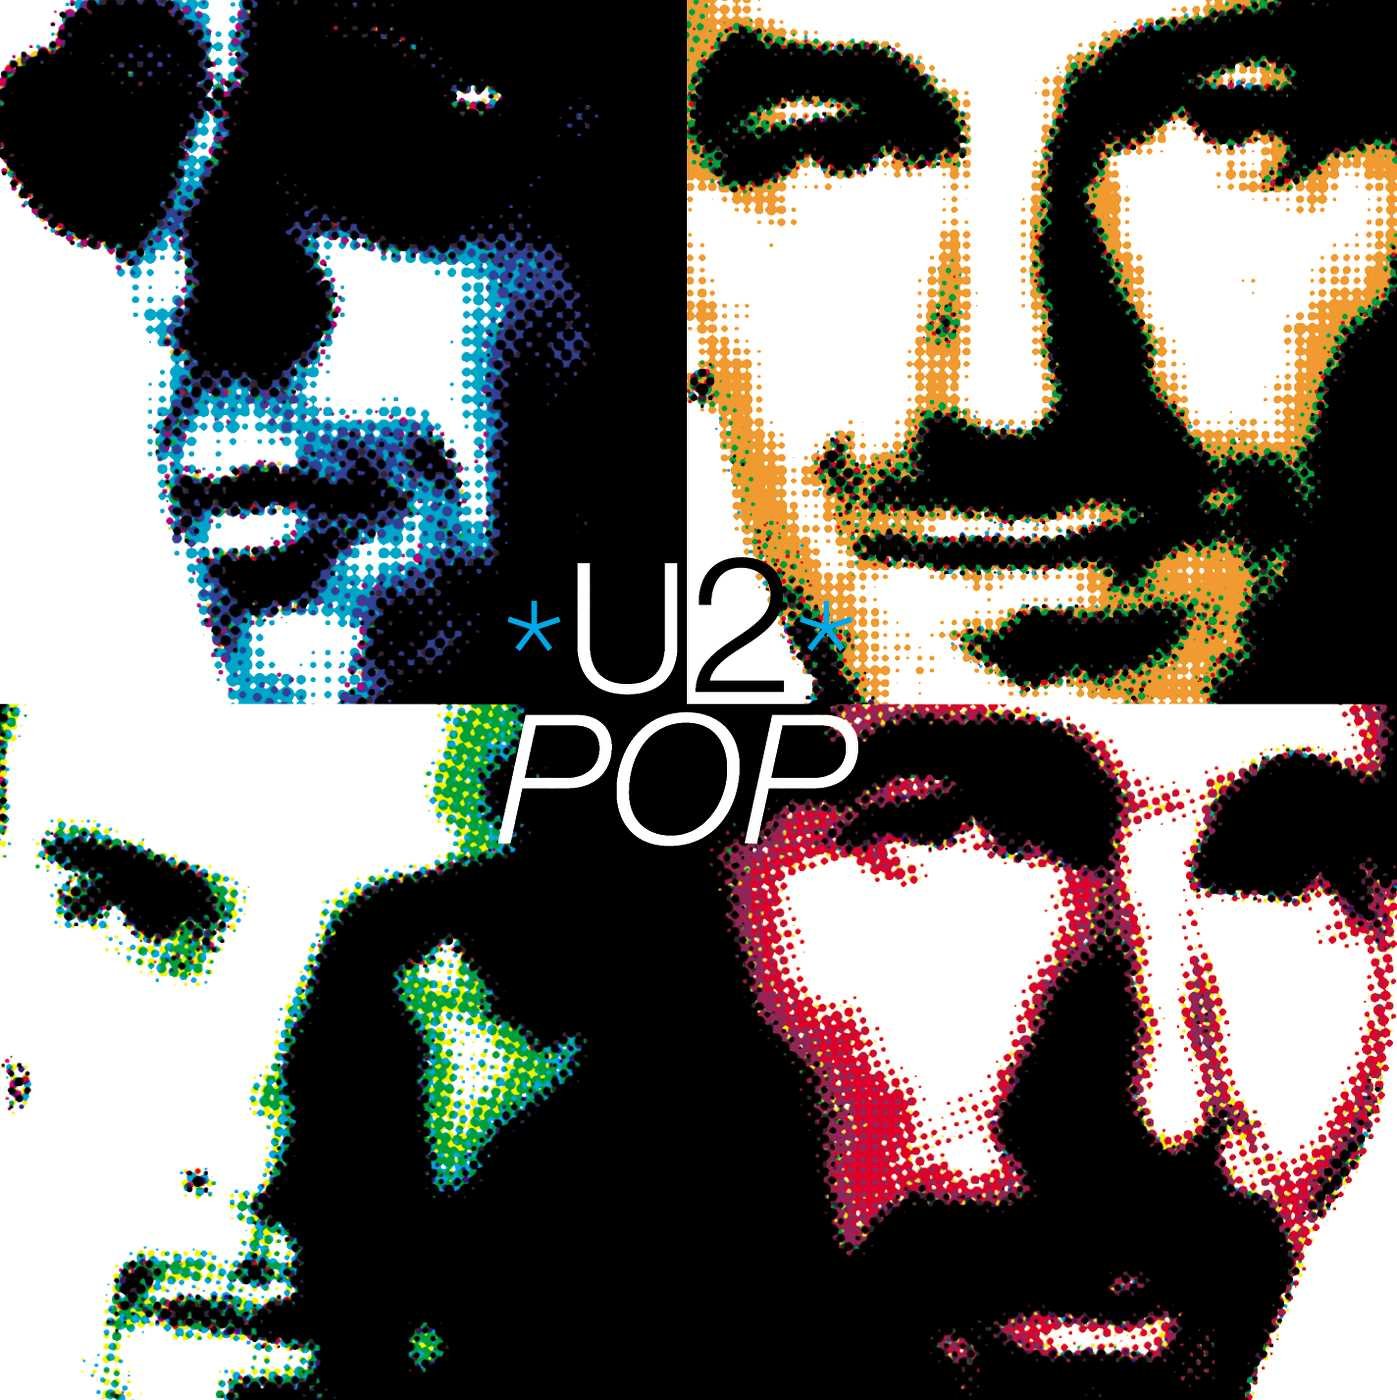 POP BY U2